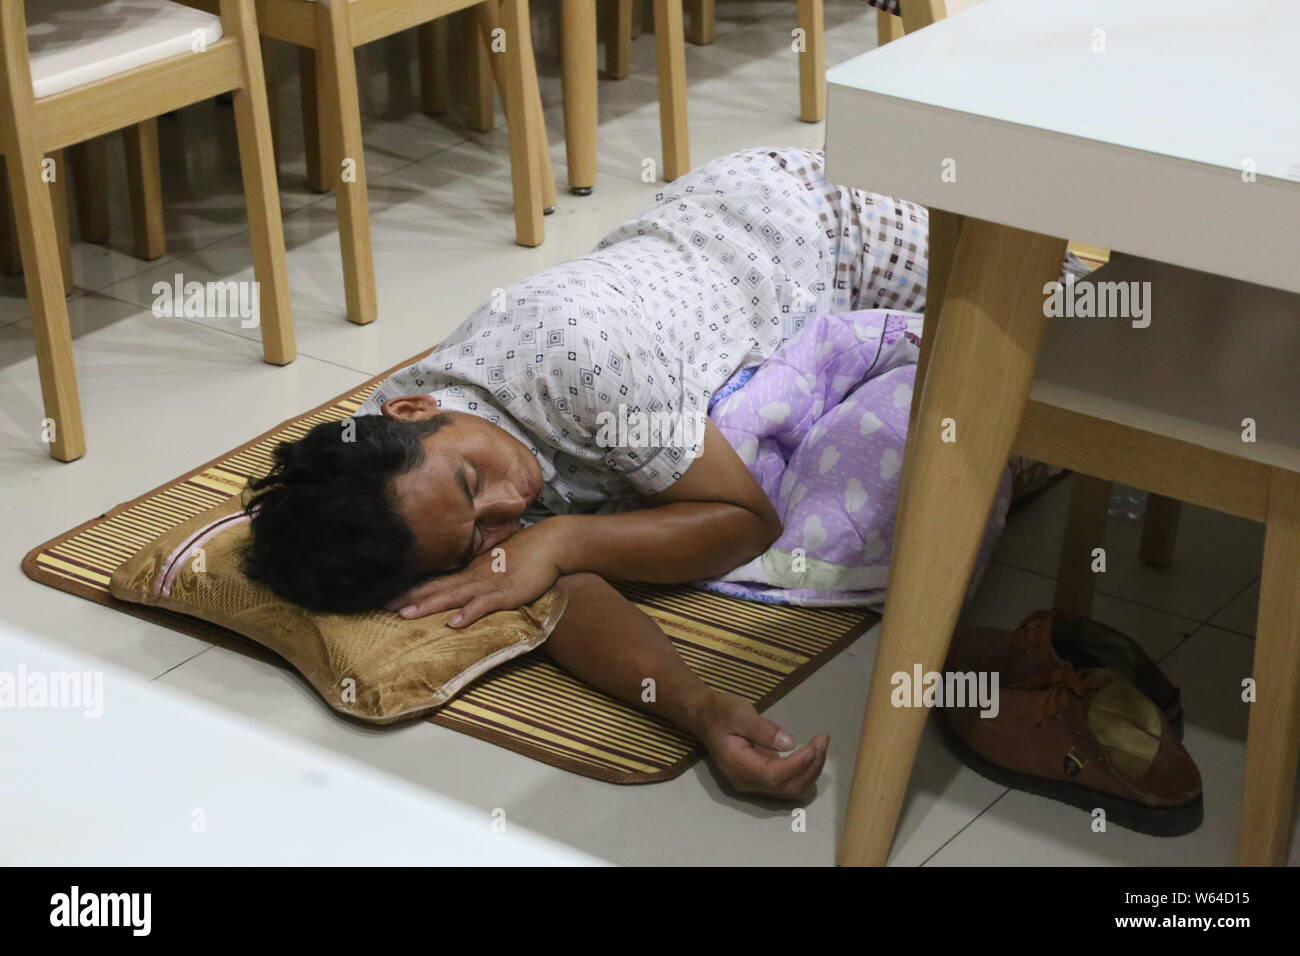 Un parent d'un étudiant de première année, qui conduit son enfant à l'inscription lors de sa première journée d'étude, dort sur le plancher à une cantine dans une université en Z Banque D'Images